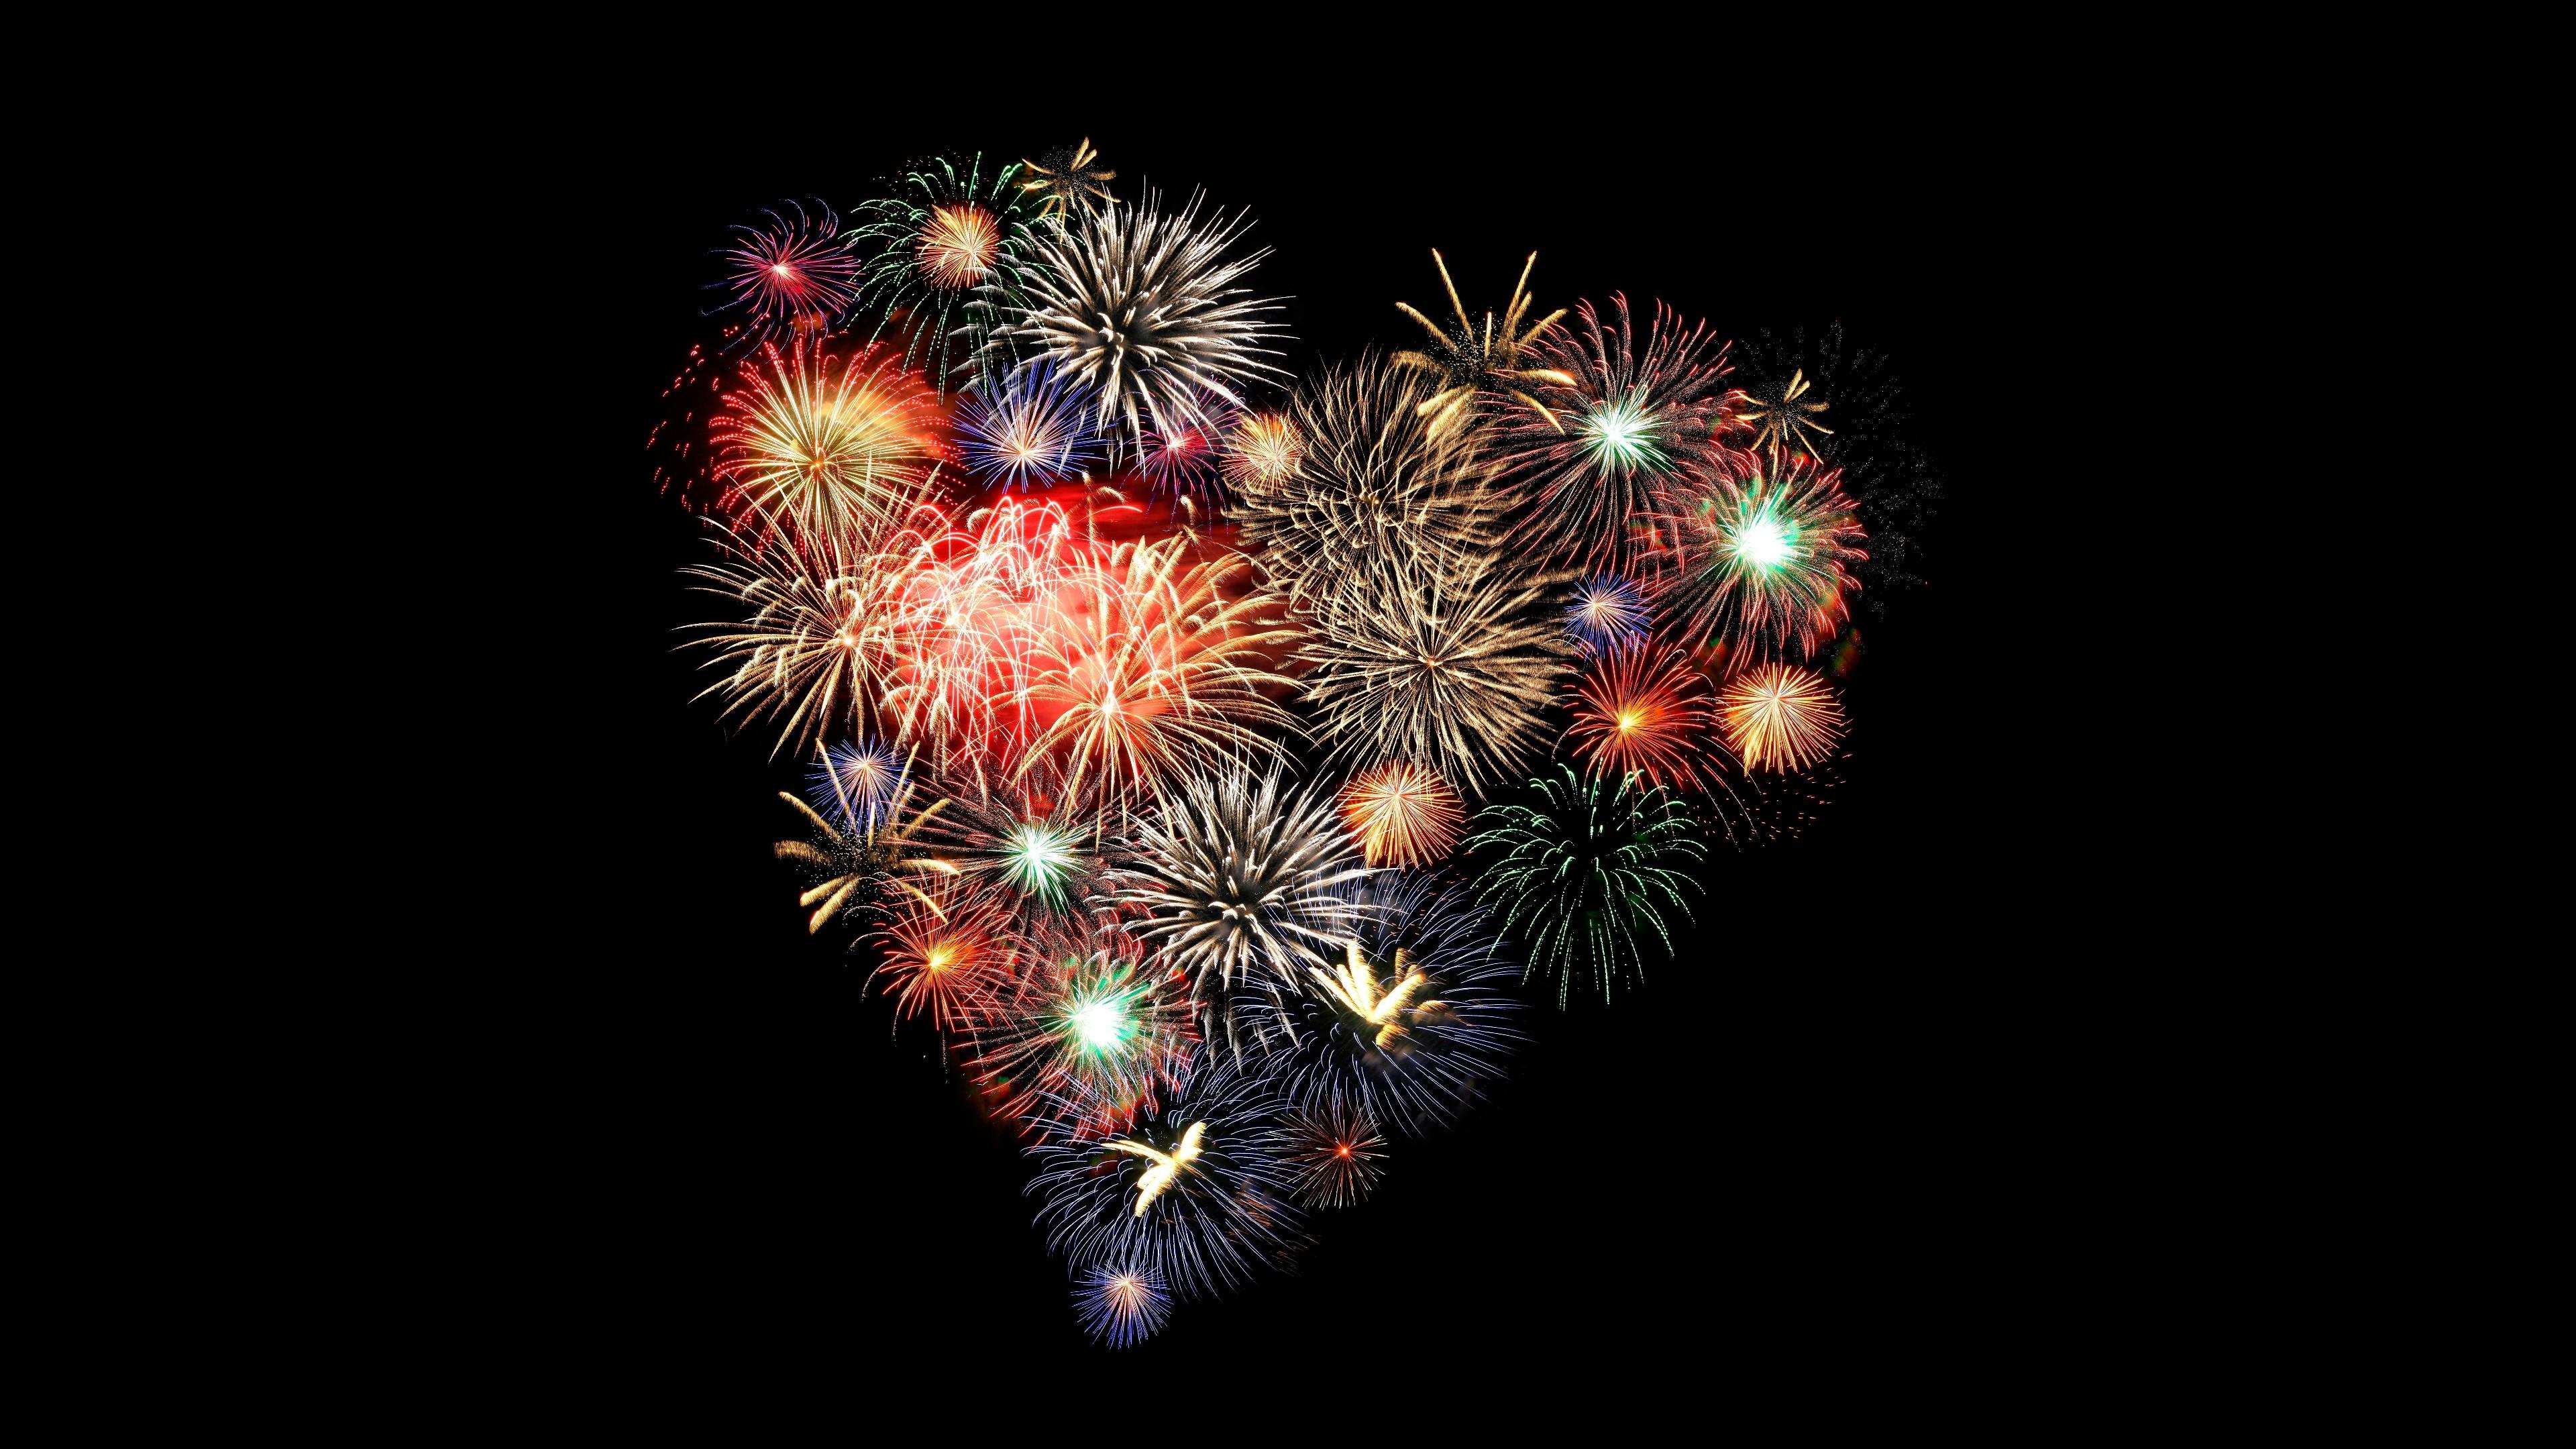 Heart Of Fireworks Wallpaper. Wallpaper Studio 10